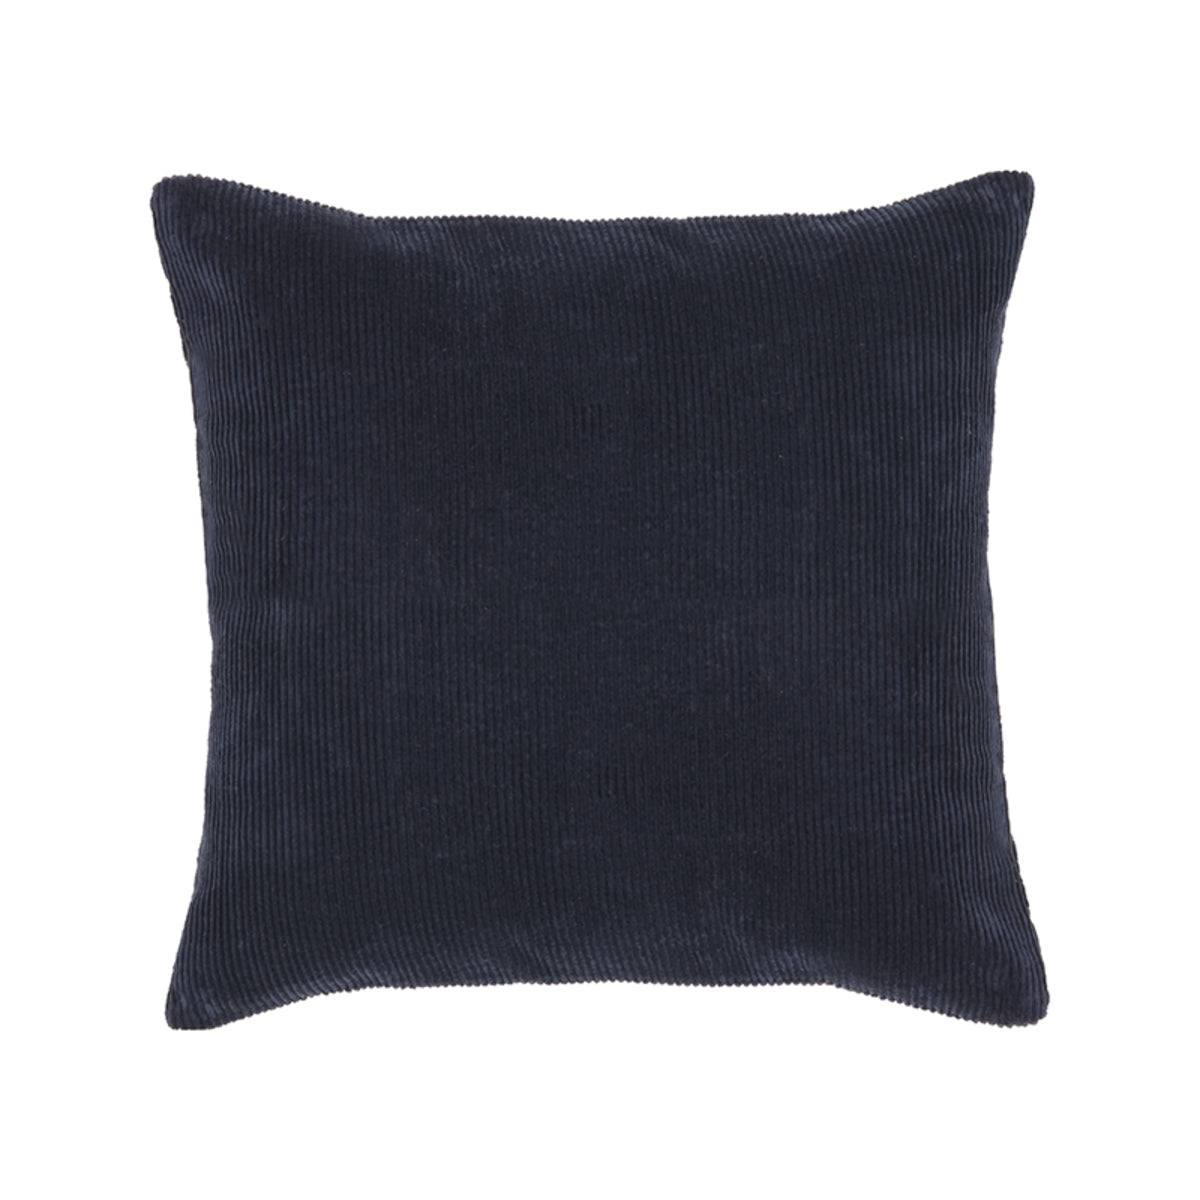 LABEL51 Throw Pillow Rib - Navy - Cotton